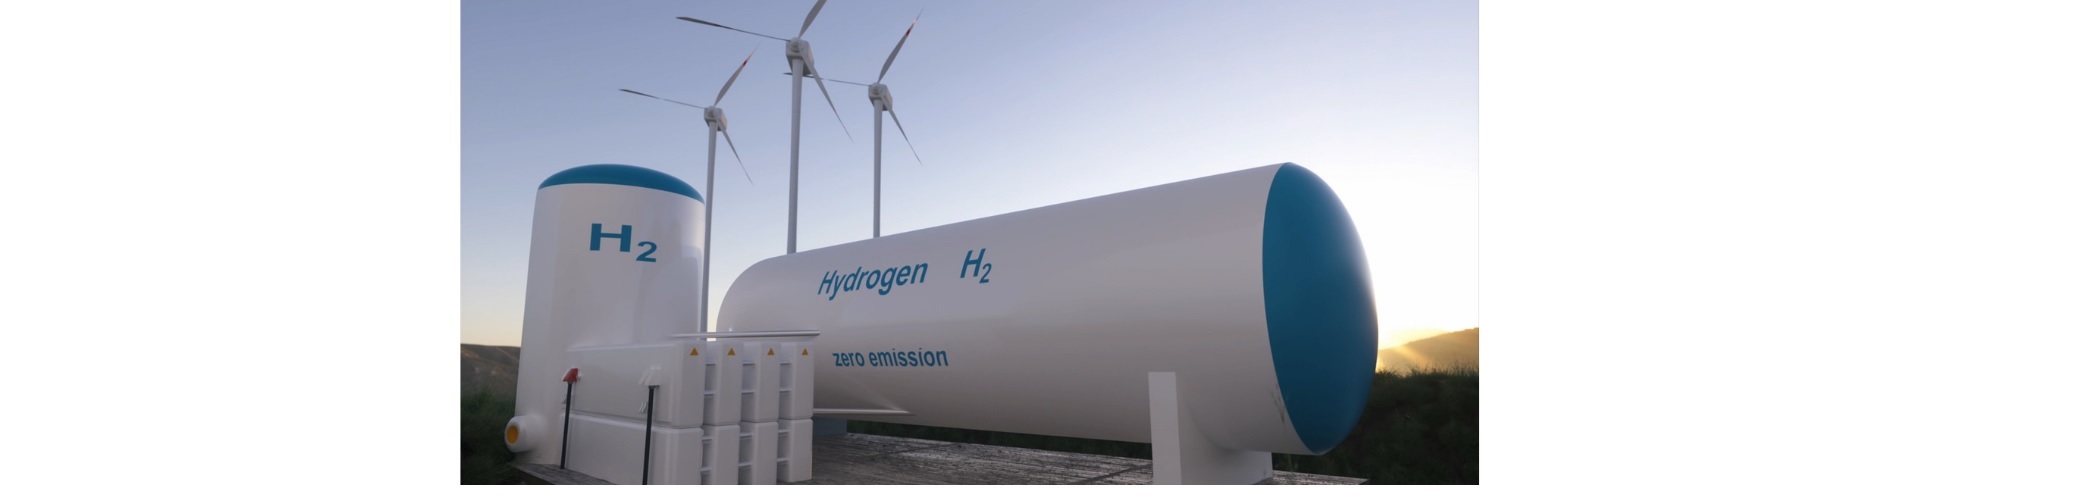 Iniciativa tecnológica para el impulso del hidrógeno y la descarbonización de nuestra industria